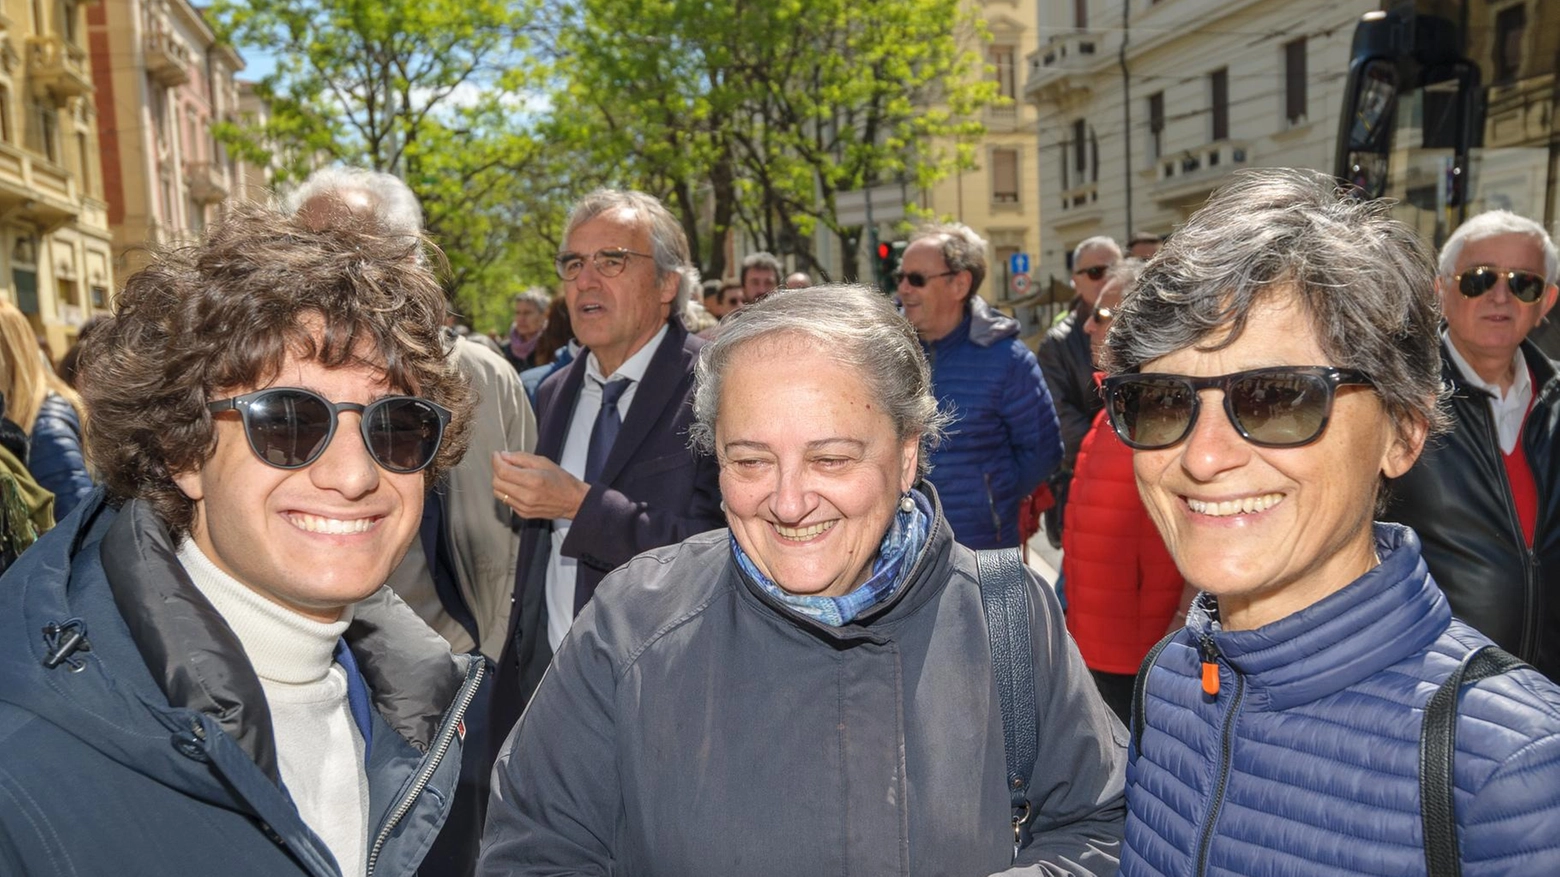 I sindaci anconetani si riuniscono per celebrare la Resistenza e l'Antifascismo. Valeria Mancinelli, Fiorello Gramillano e Fabio Sturani partecipano alla commemorazione del 25 Aprile, coinvolgendo la comunità.